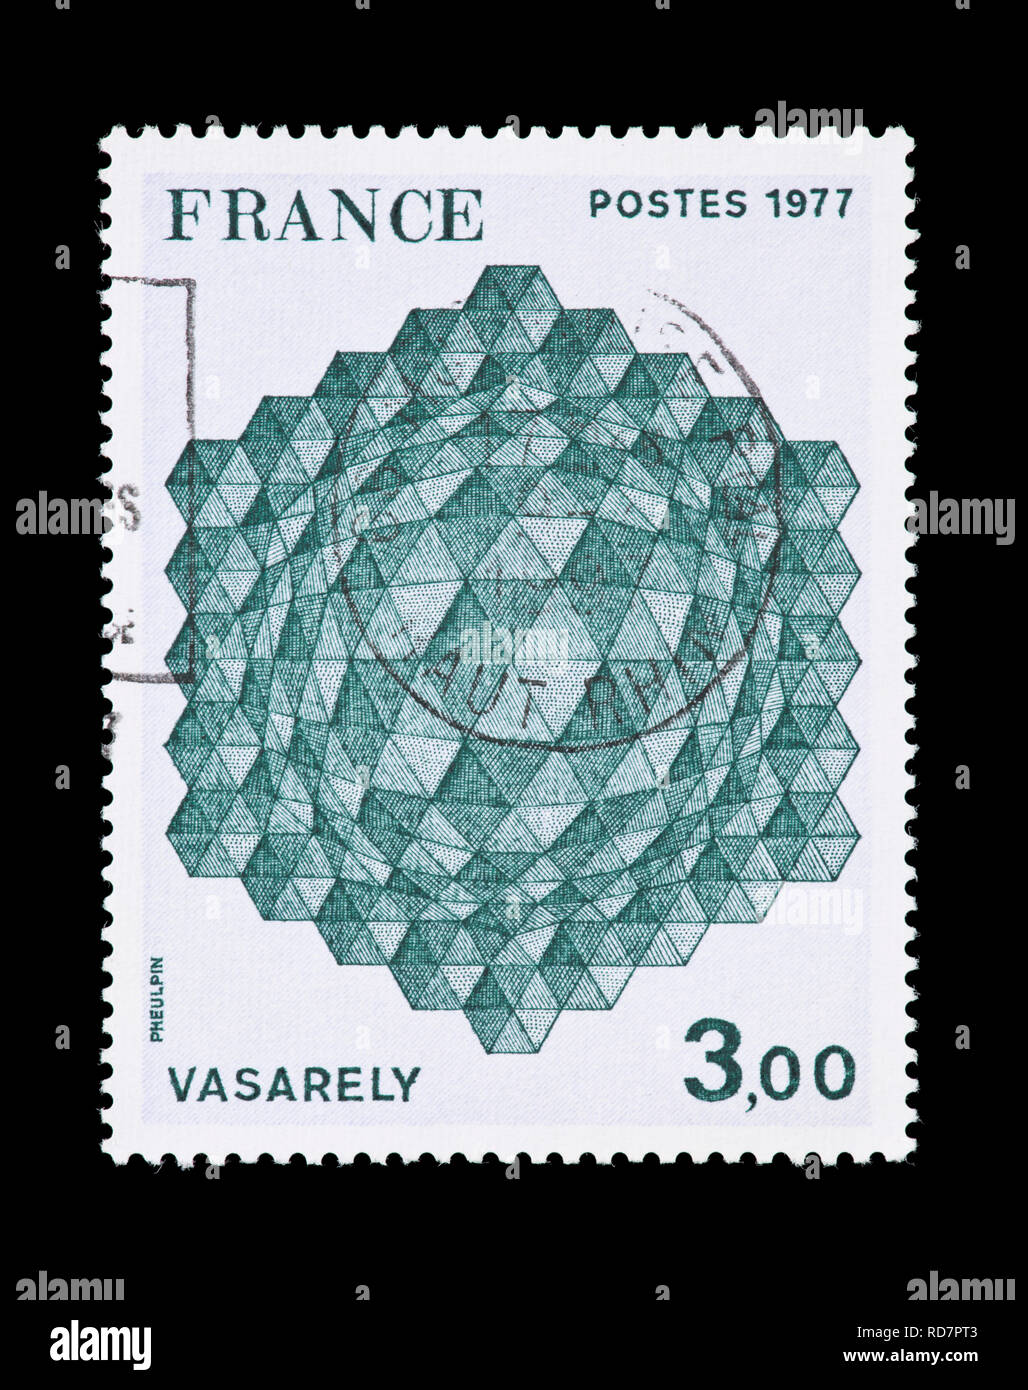 Timbre-poste de France illustrant la conception tridimensionnelle par Victor Vasarely Banque D'Images